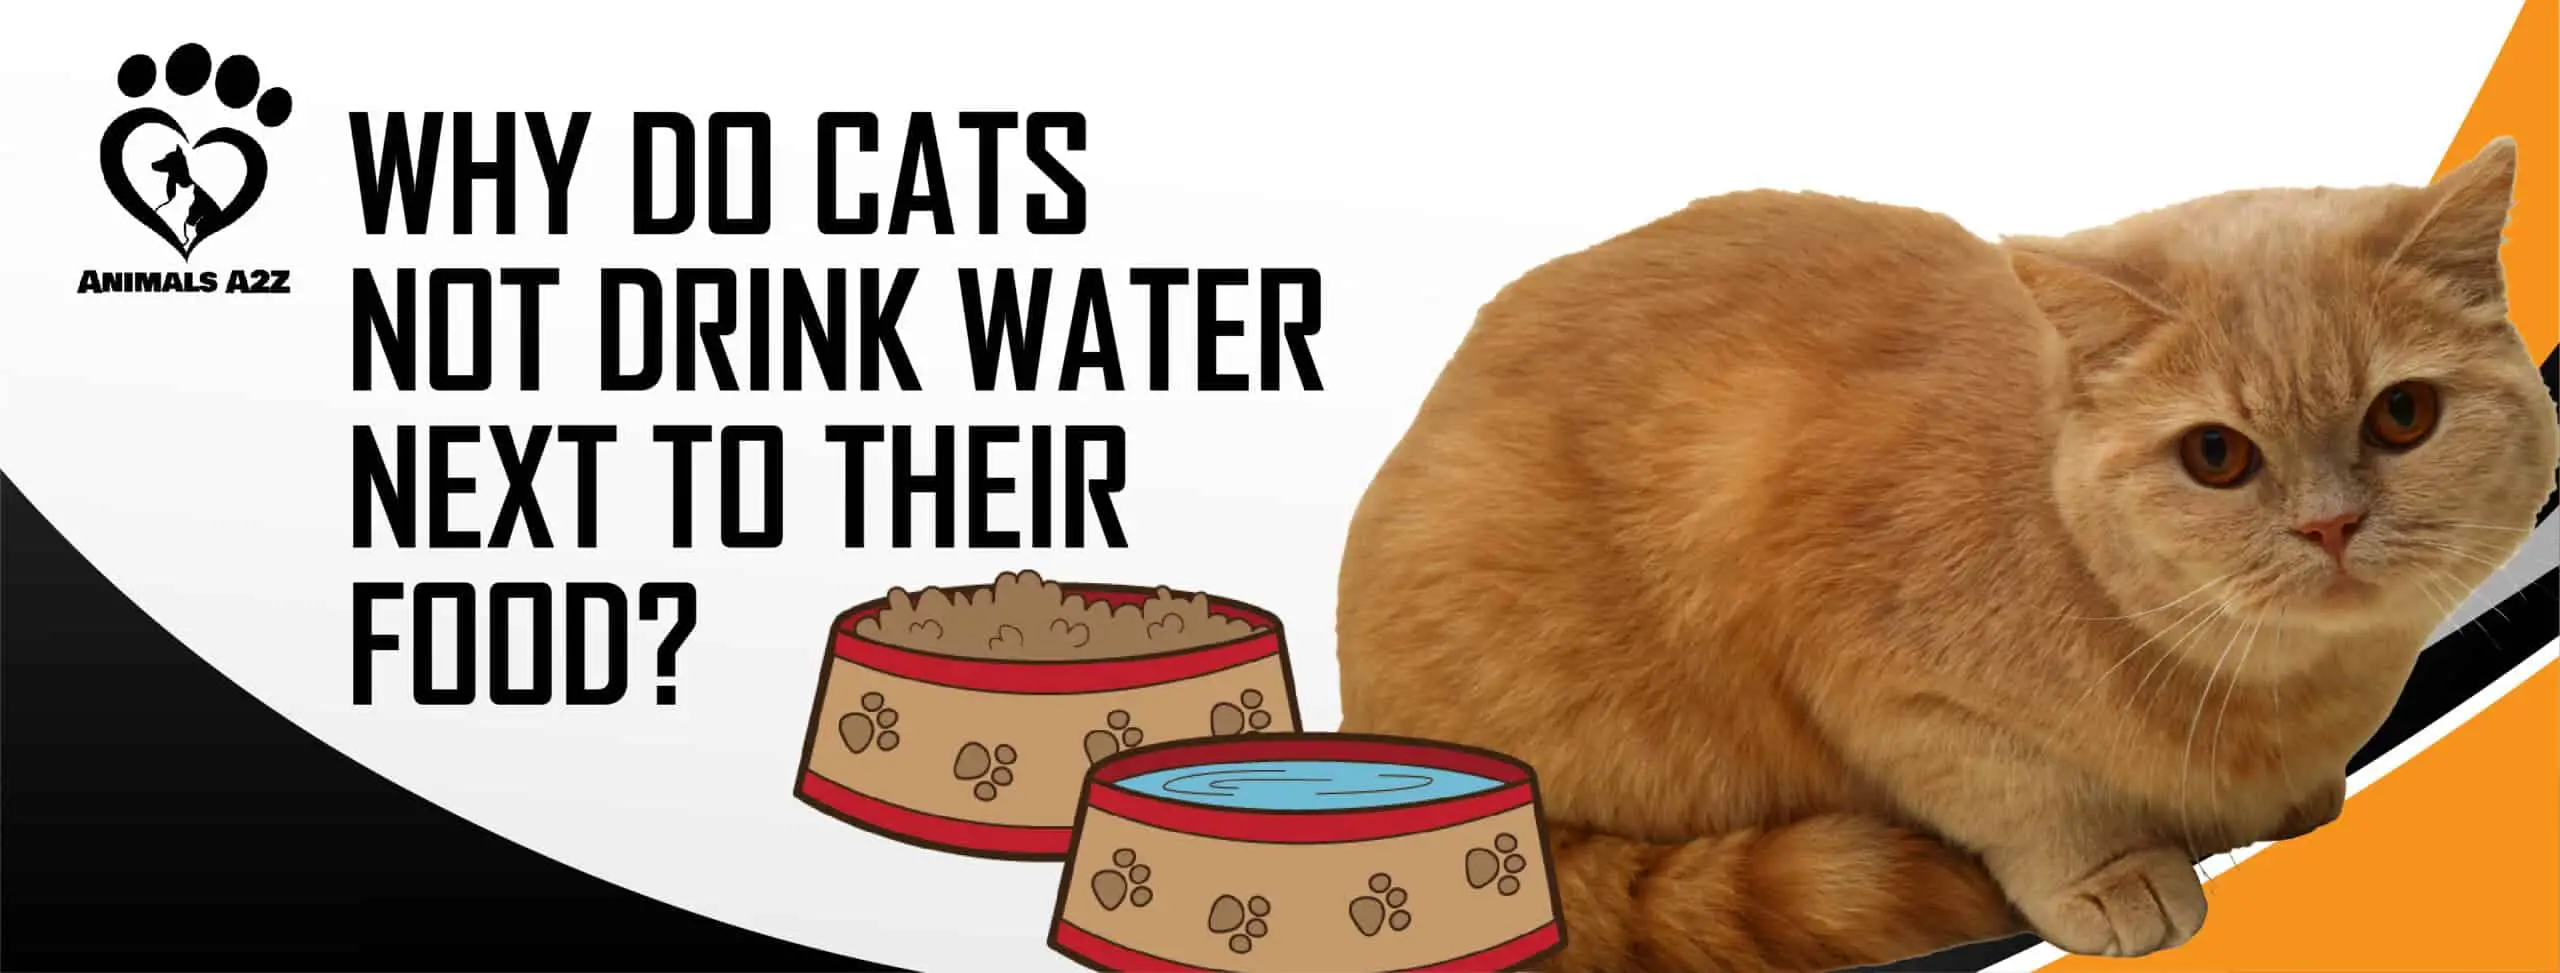 Hvorfor drikker katte ikke vand ved siden af deres mad?